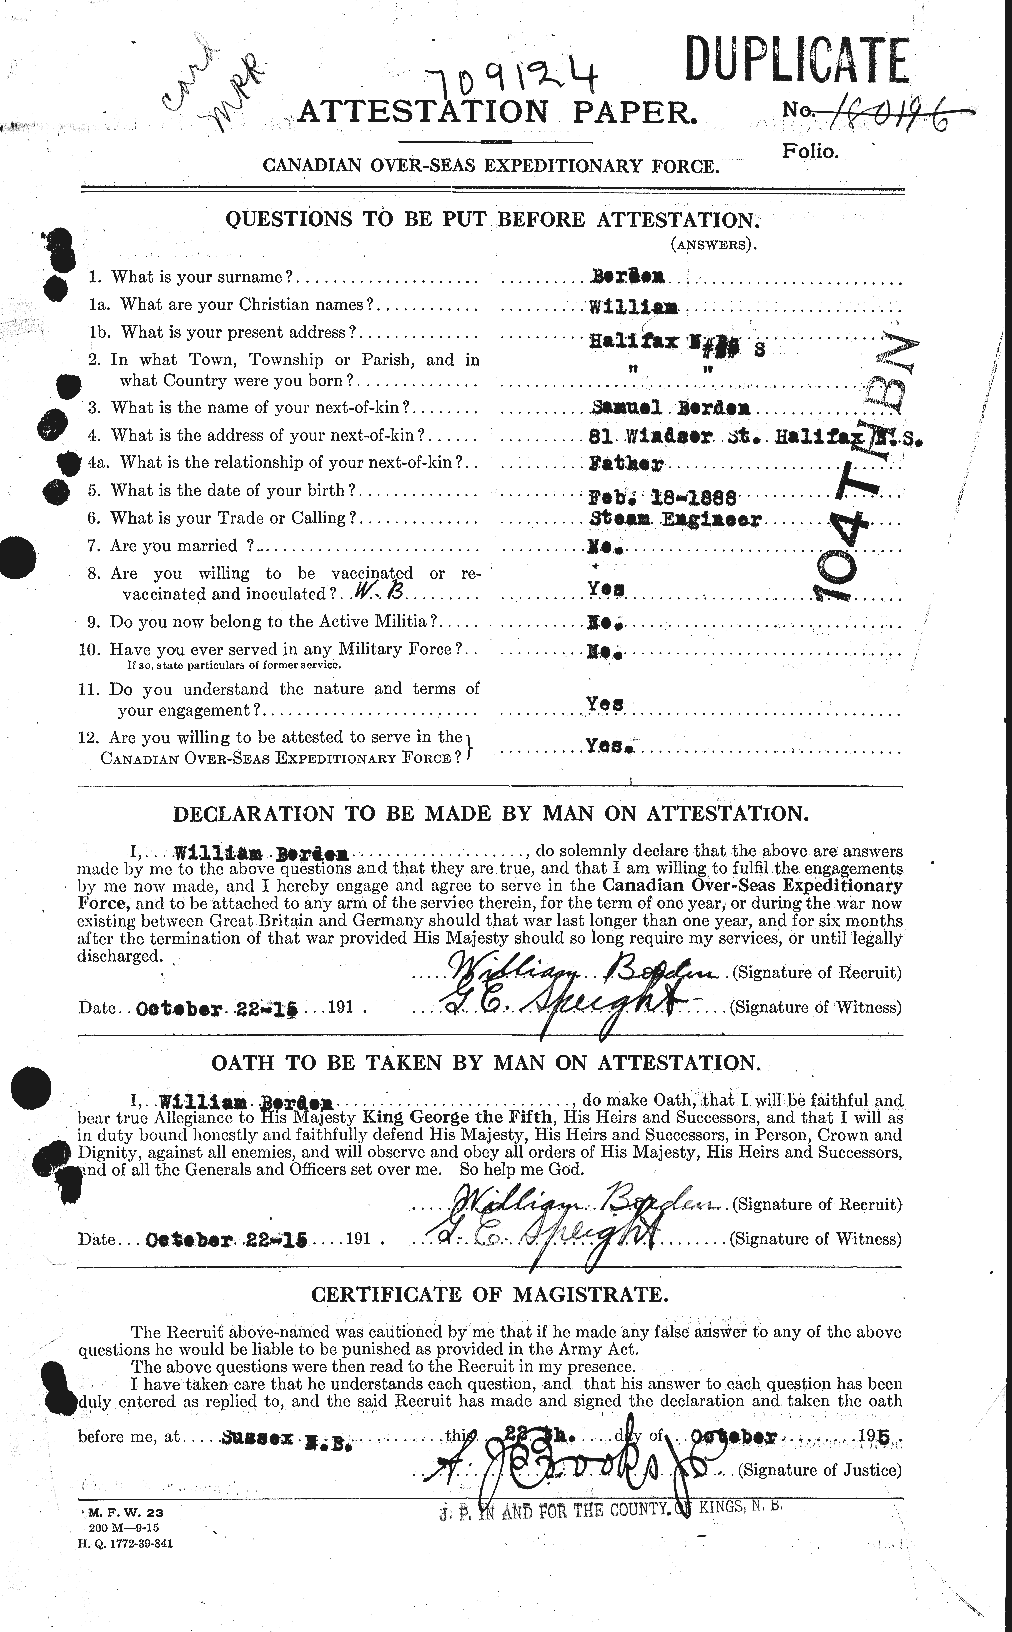 Dossiers du Personnel de la Première Guerre mondiale - CEC 252322a